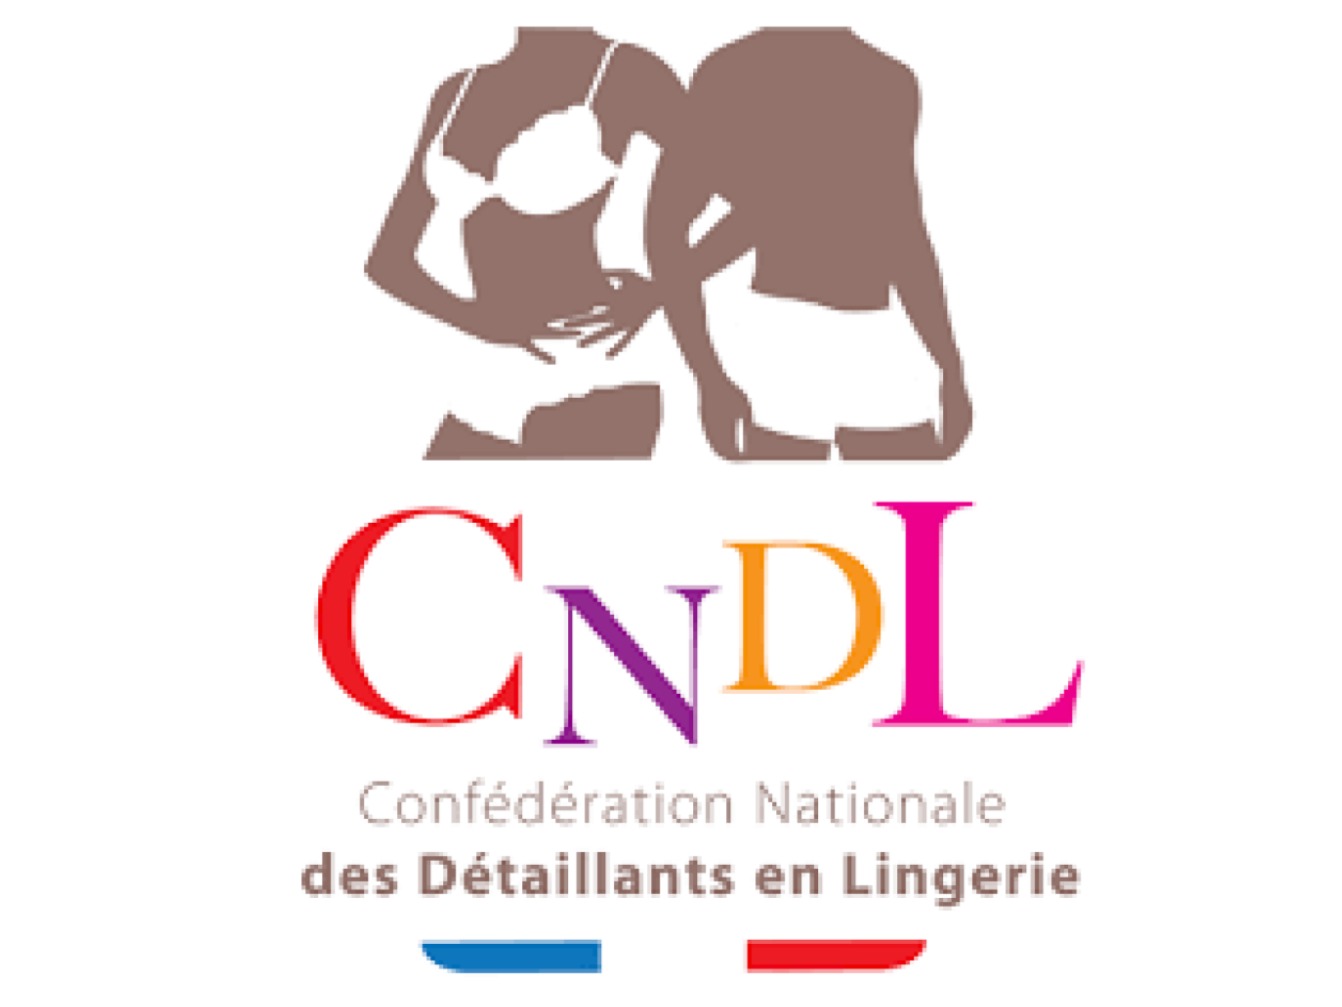 CNDL - CONFÉDÉRATION NATIONALE DES DÉTAILLANTS EN LINGERIE